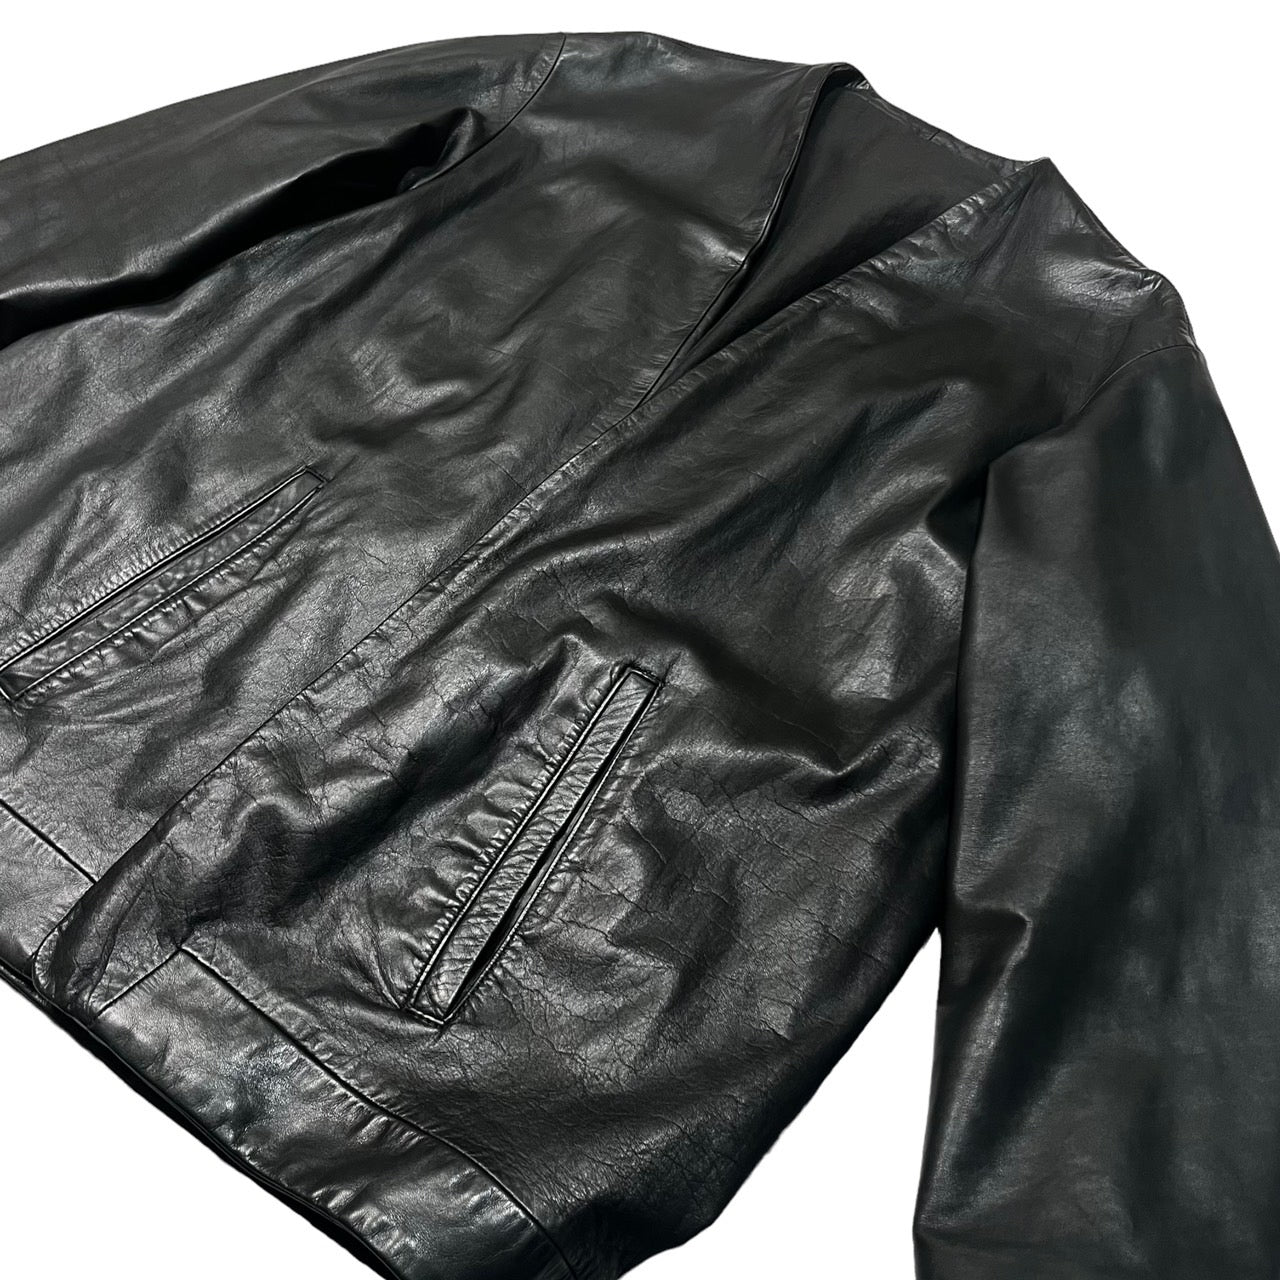 the Sakaki(ザサカキ) All leather stadium jacket remake haori 